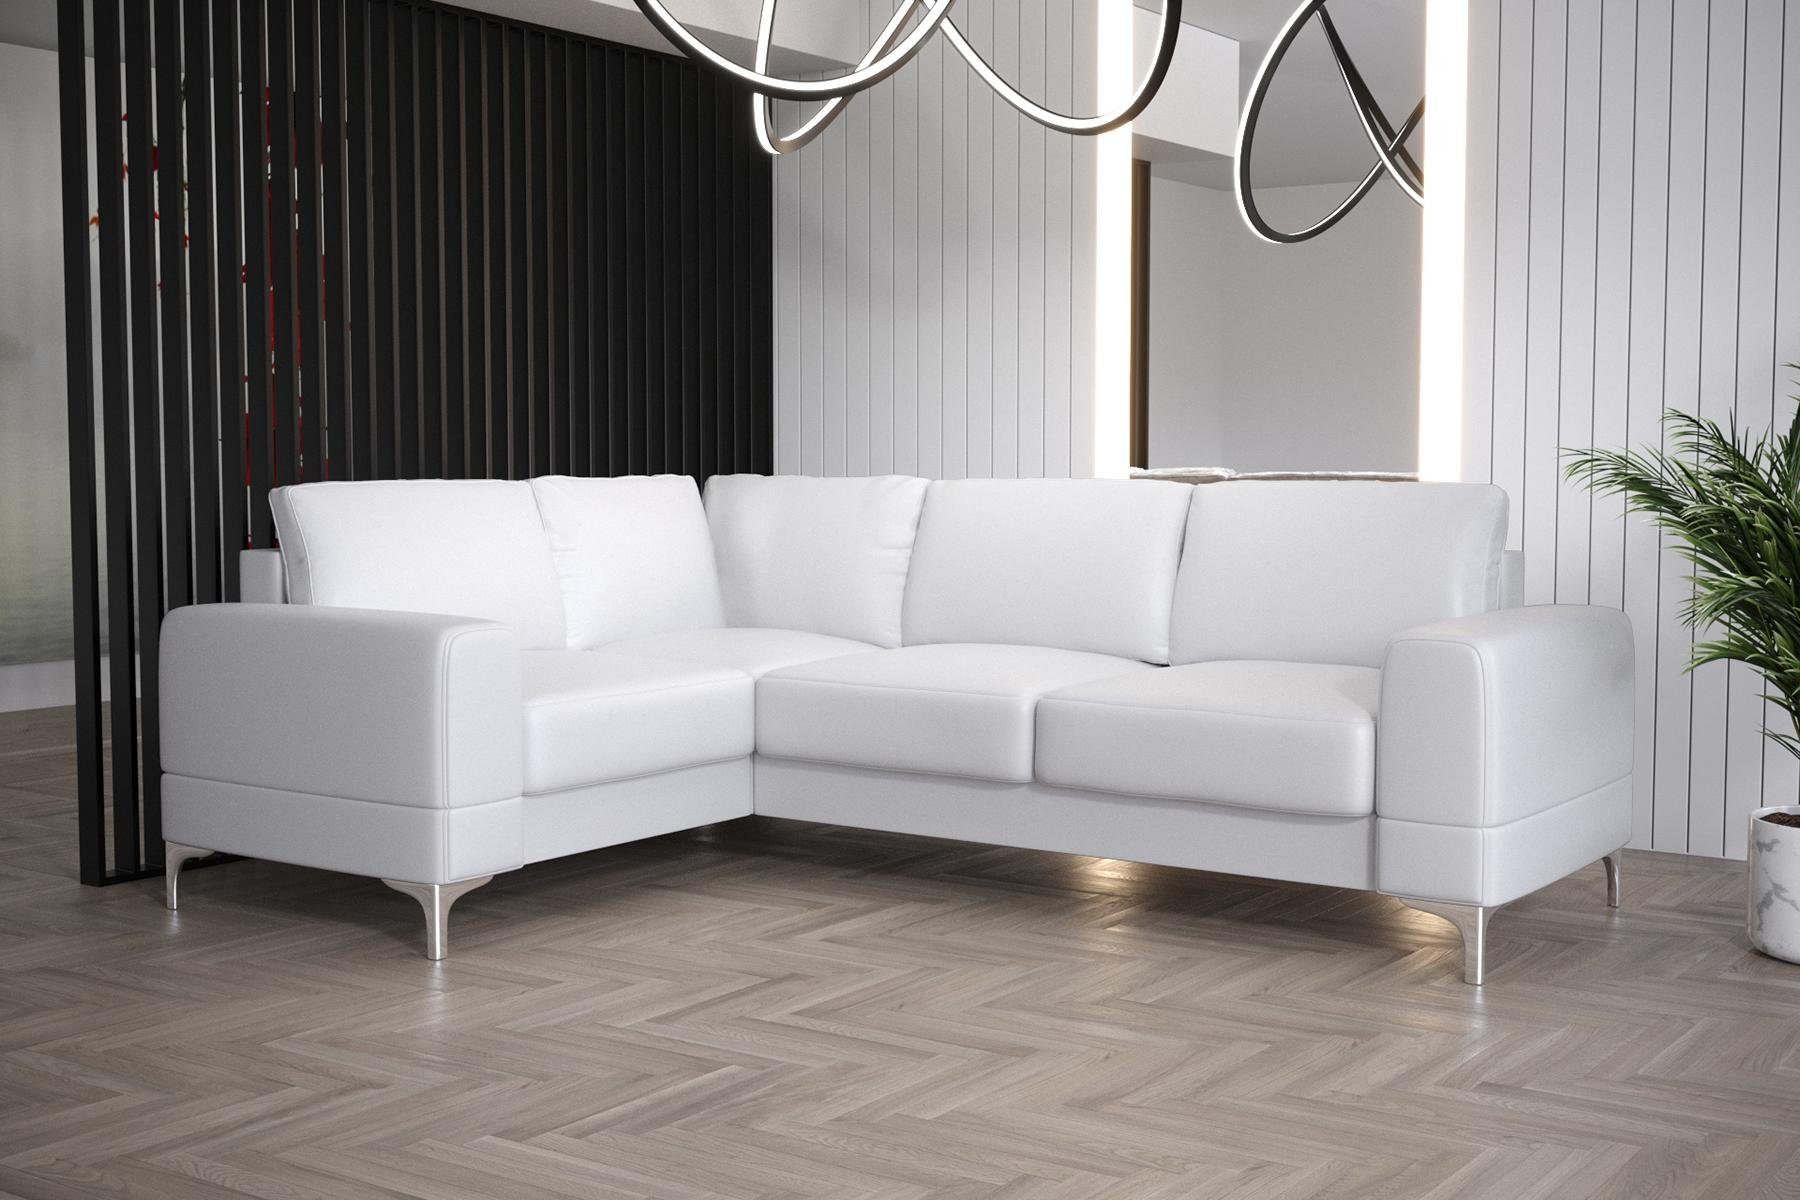 JVmoebel Ecksofa Wohnzimmer Sofa L-Form Möbel Modern Luxus Ecksofa Couch, Made in Europe Weiß